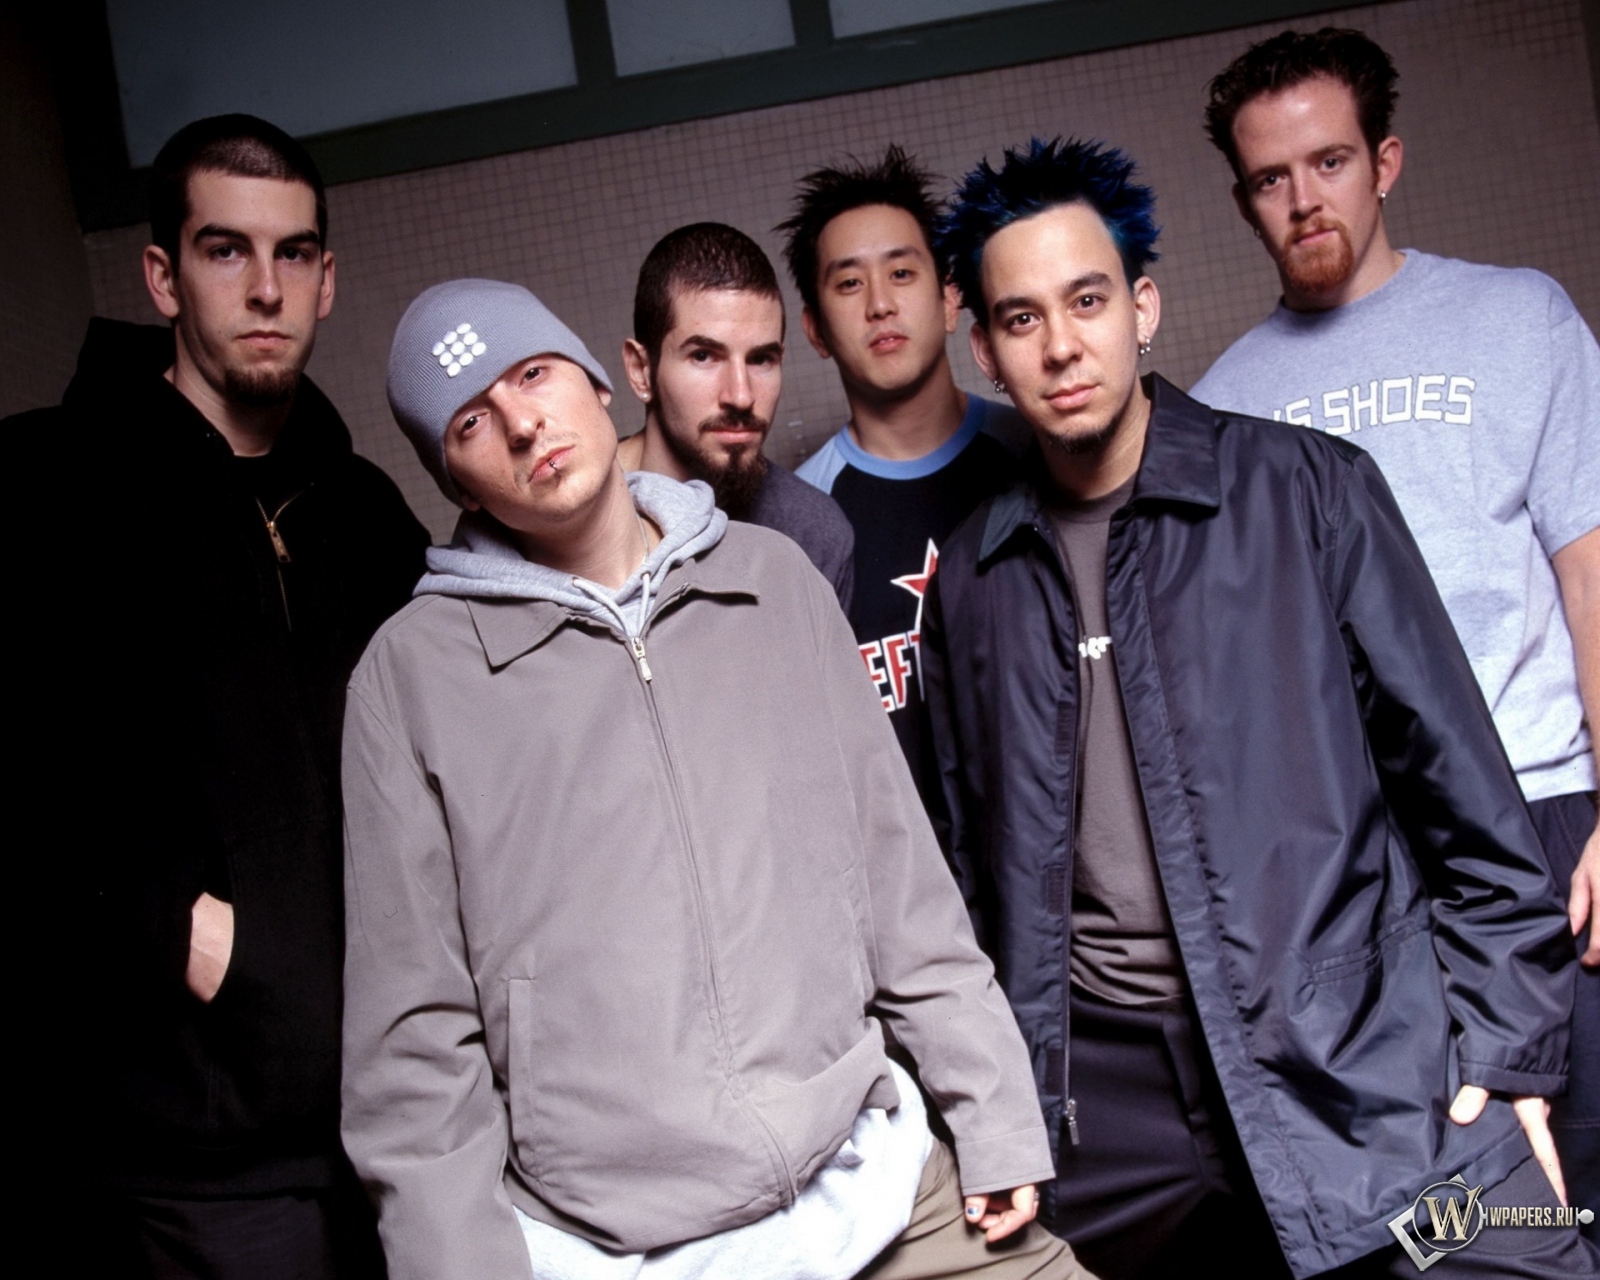 Linkin Park 1600x1280